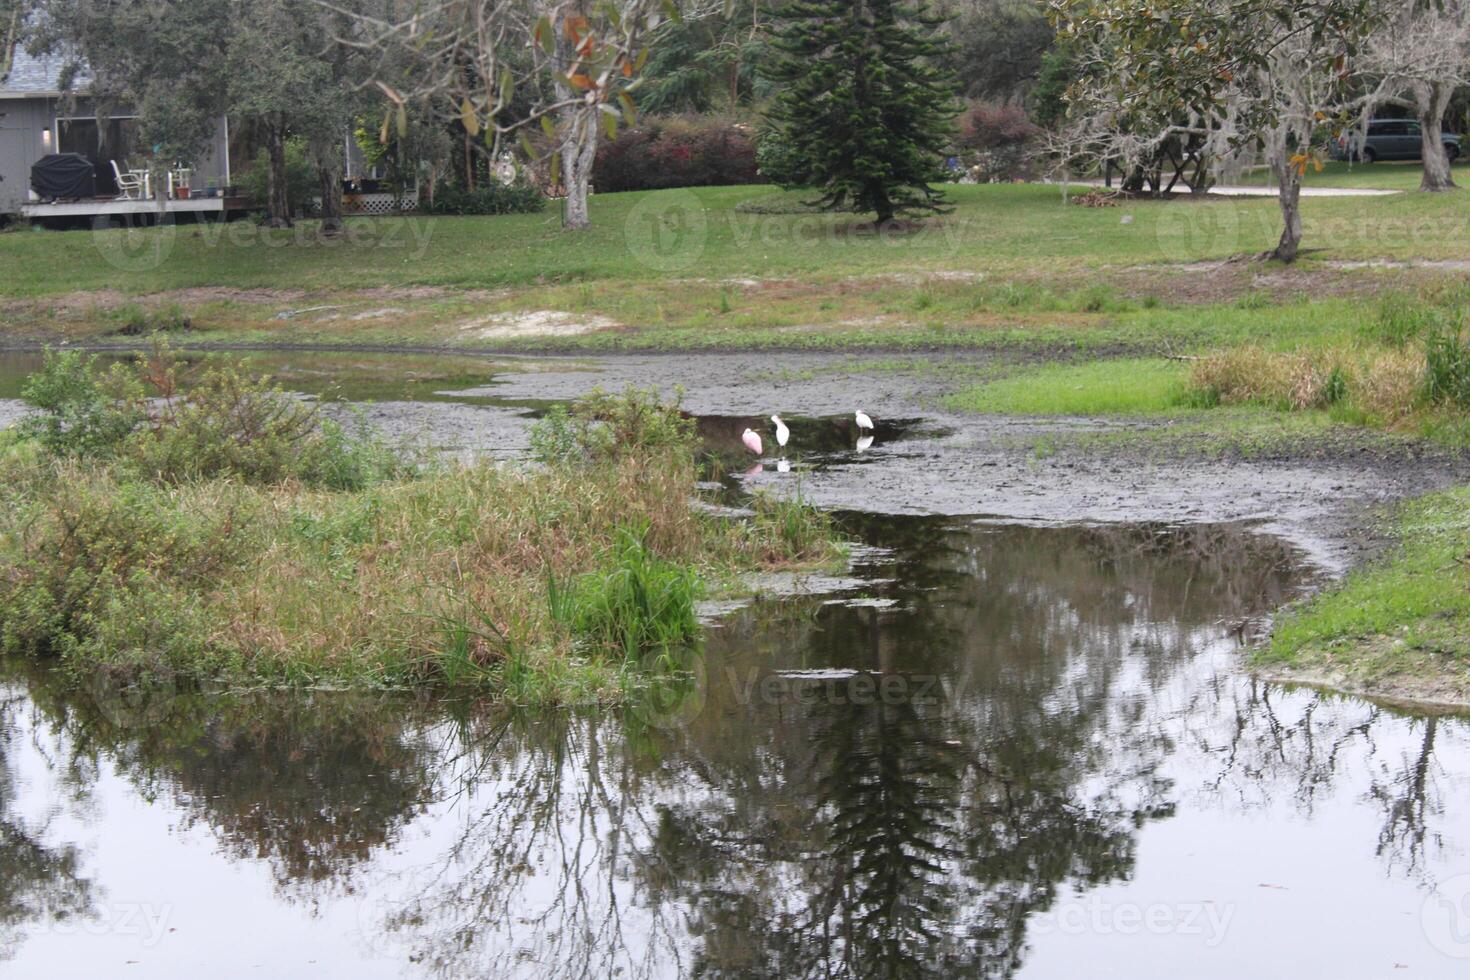 landschap in de omgeving van een klein moeras in tampa Florida met dieren in het wild foto